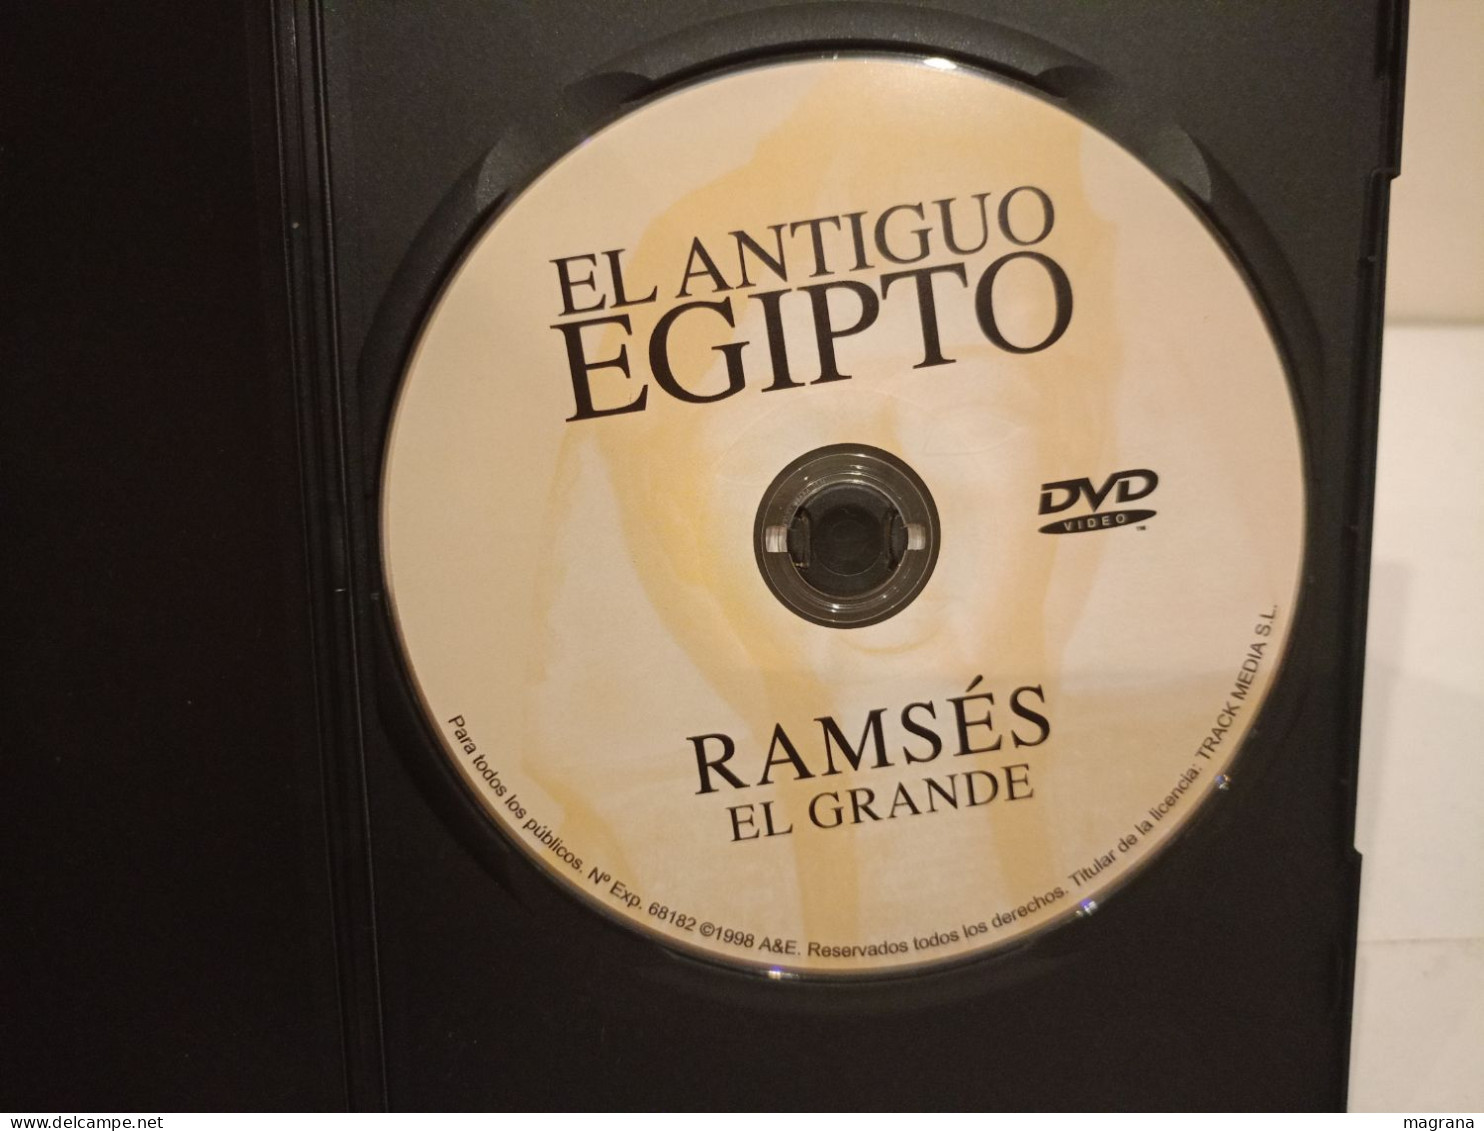 Película Dvd. Los Grandes Secretos De Egipto. Ramsés El Grande. Historia. 1998. - Geschiedenis